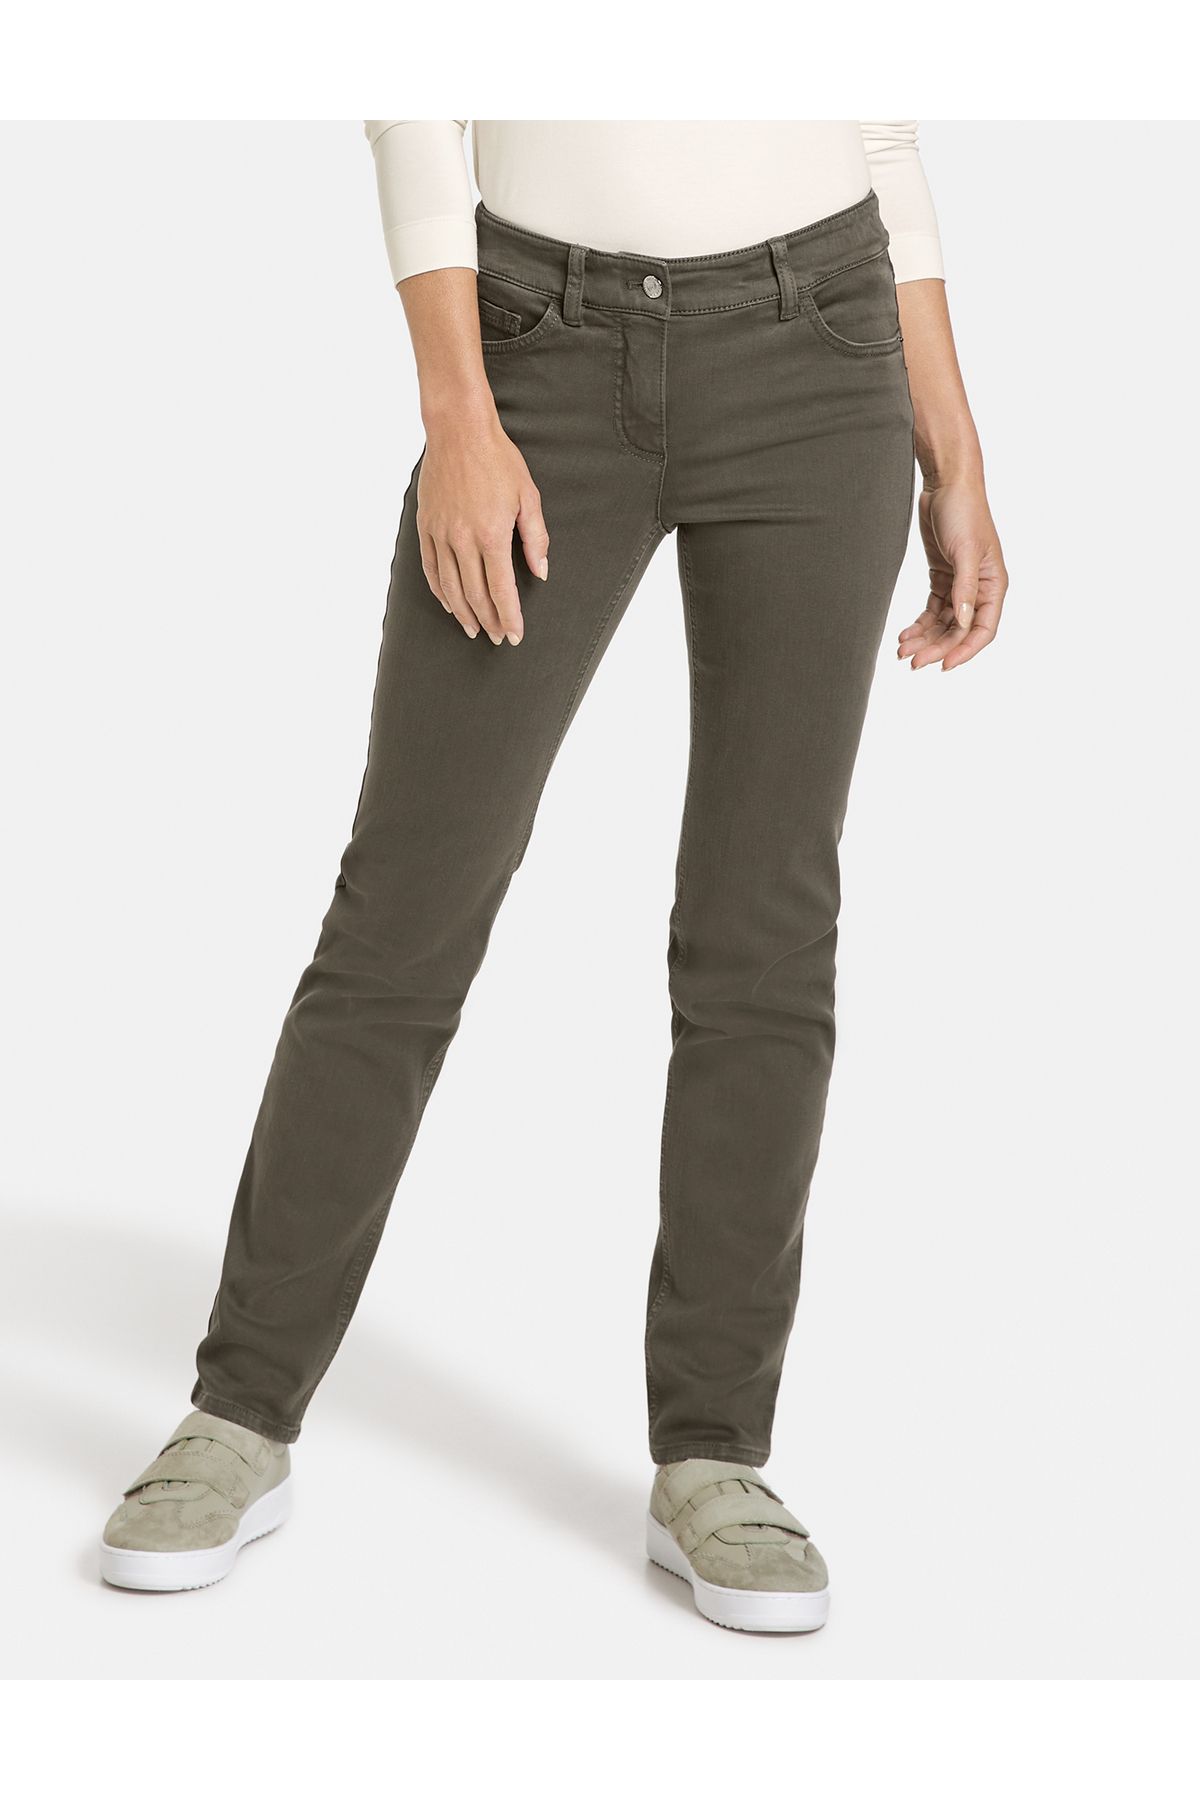 Gerry Weber Hose Jeans lang 5-Pocket Hose Best4me Slim Fit Kurzgröße -  Trendyol